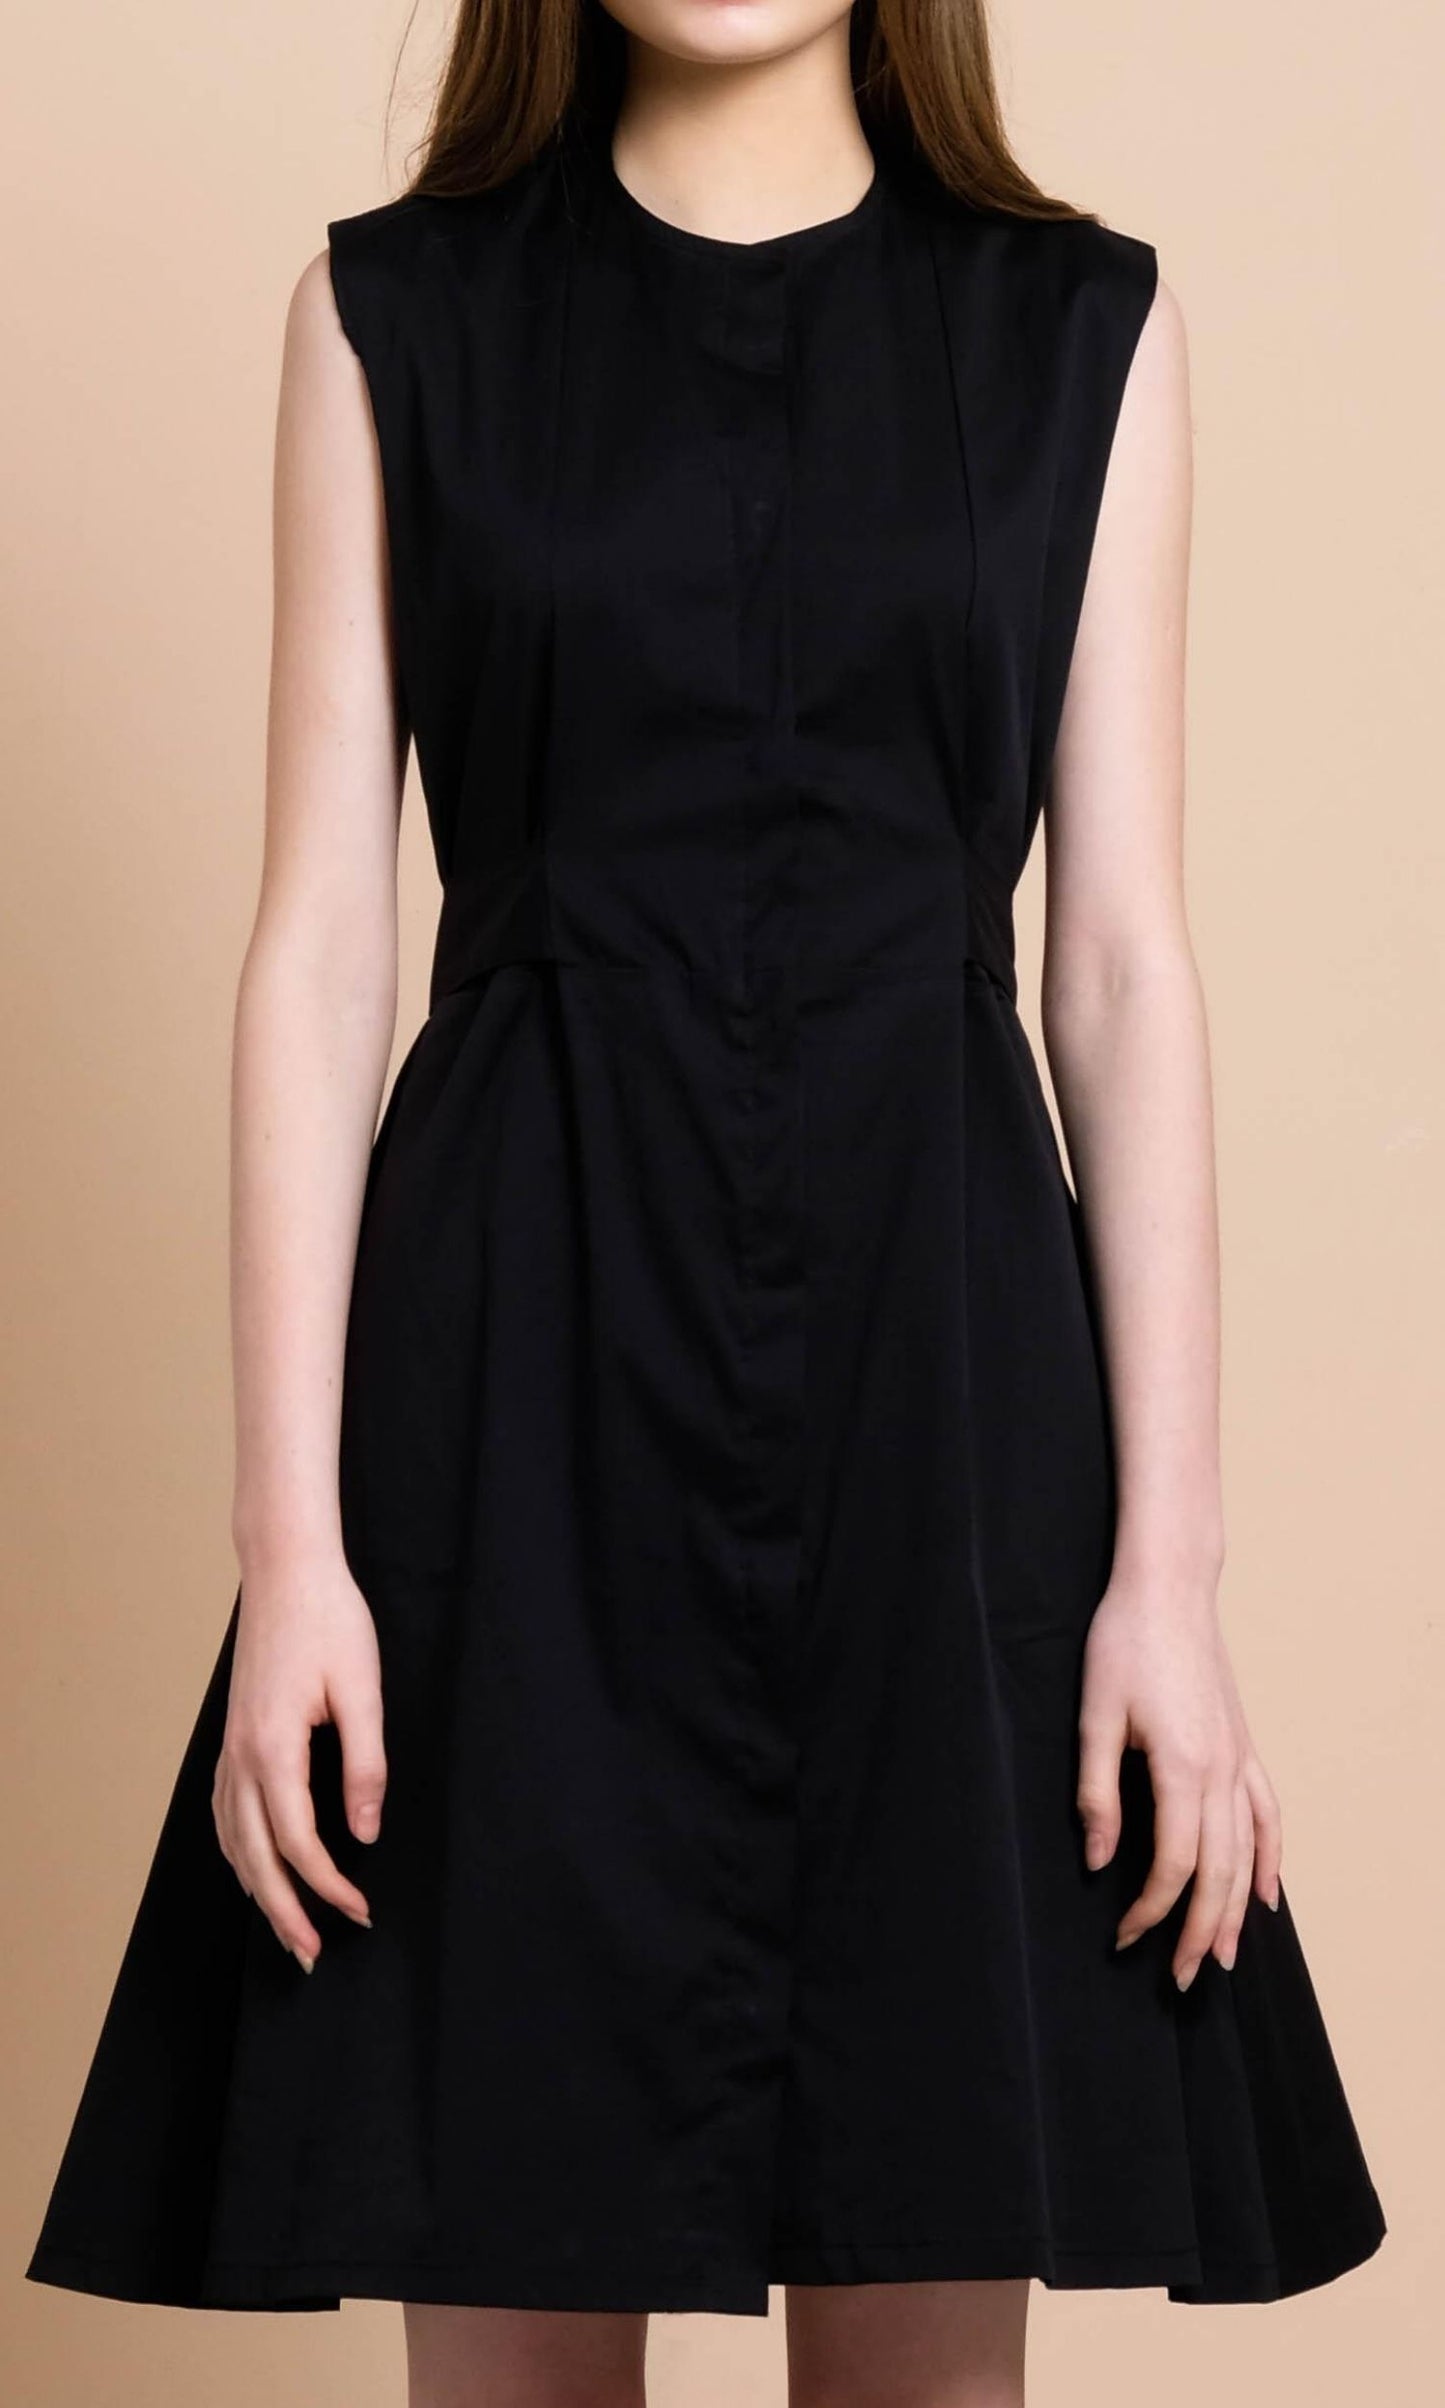 Beatrice Dress in Black